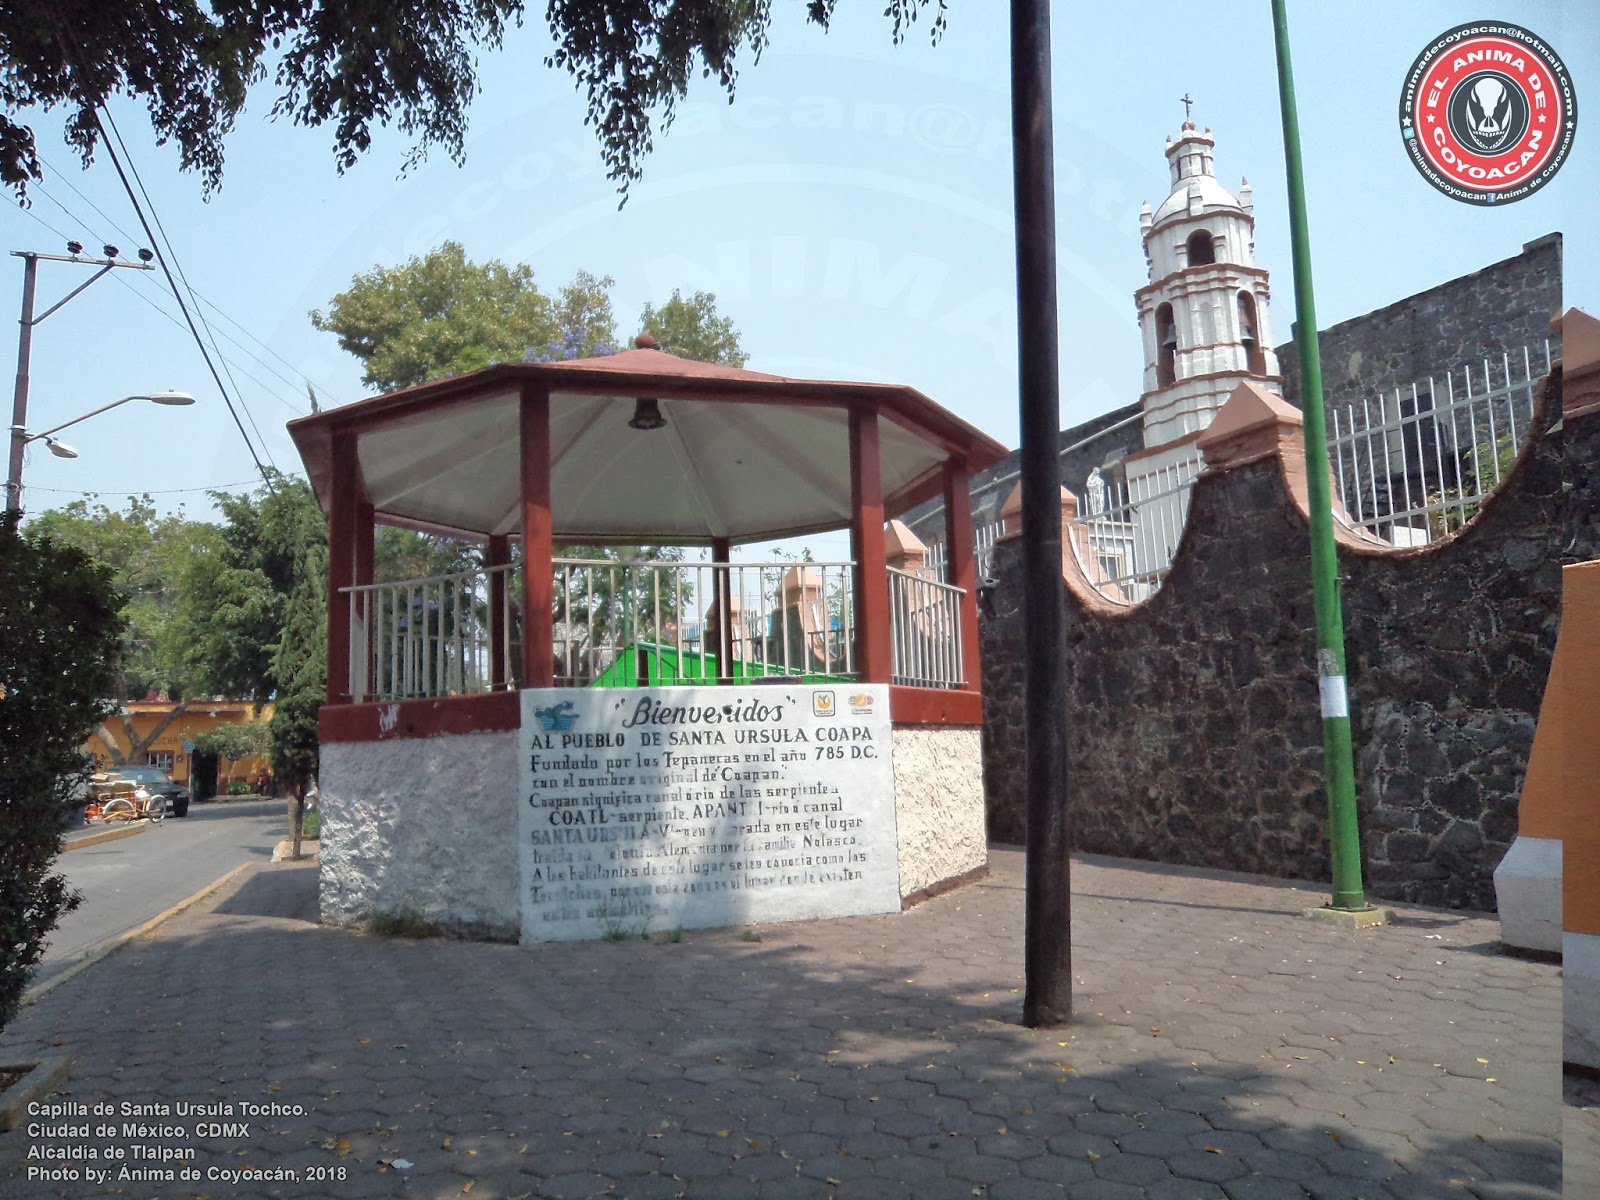 El Blog del Anima de Coyoacan: Templos e Iglesias de México: Capilla de Santa  Ursula Tochco (2 Fotos)